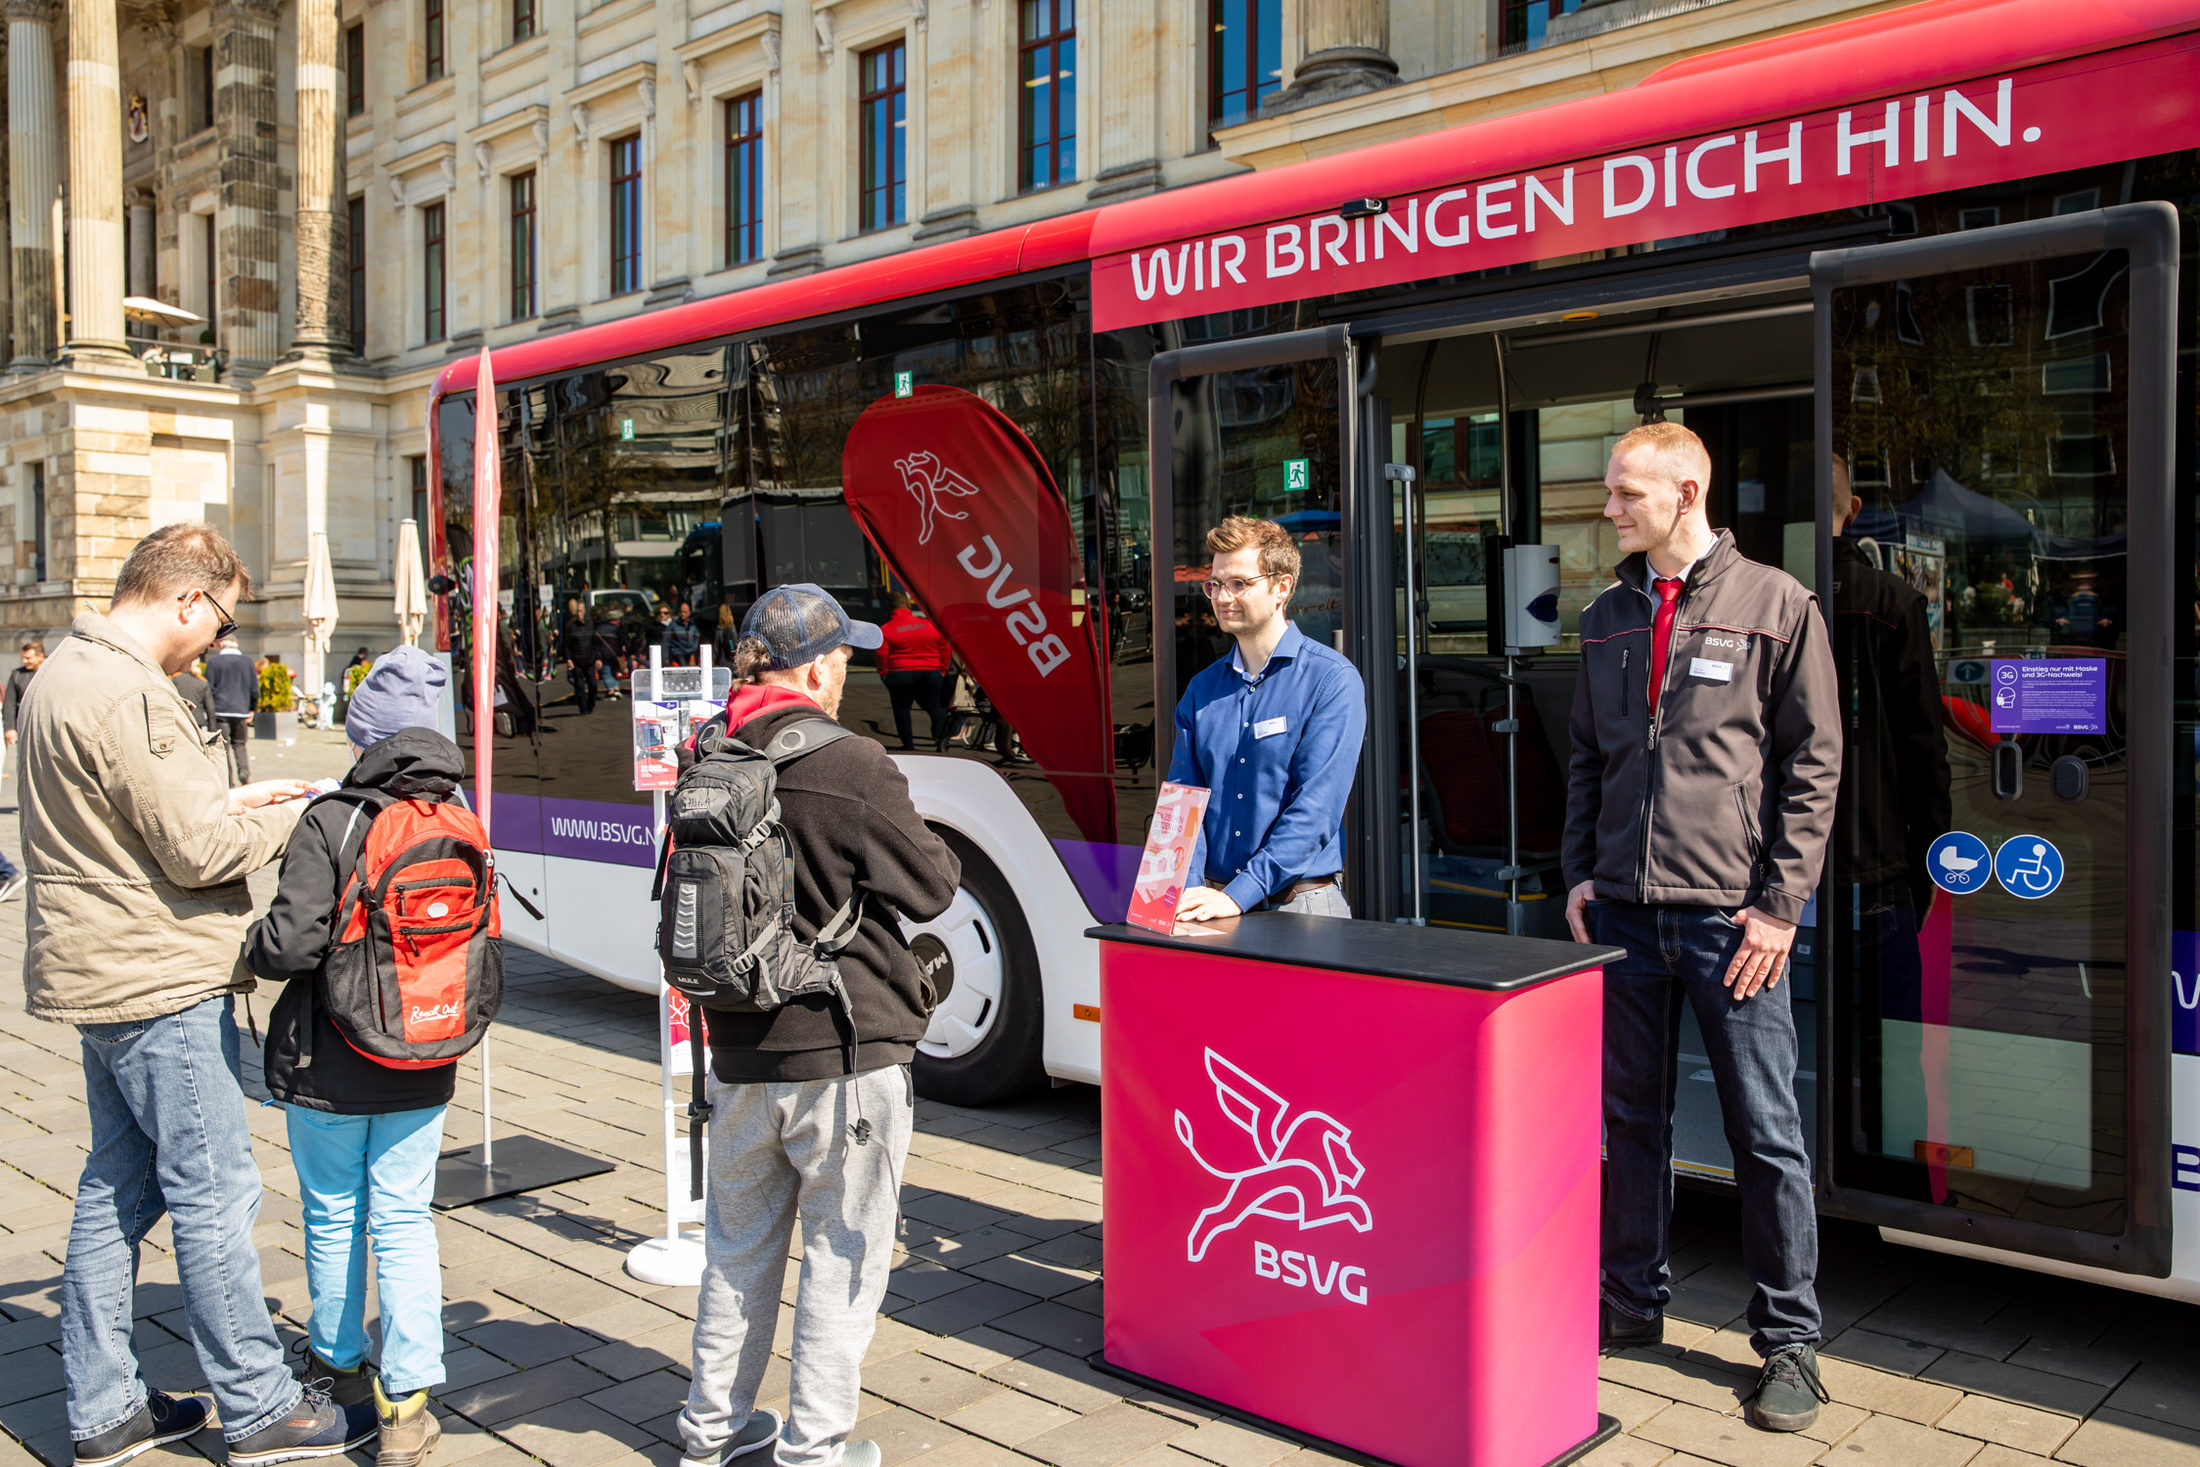 Die BSVG beriet Interessierte darüber, wie sie auch ohne Fahrrad oder Auto bequem in Braunschweig unterwegs sein können.